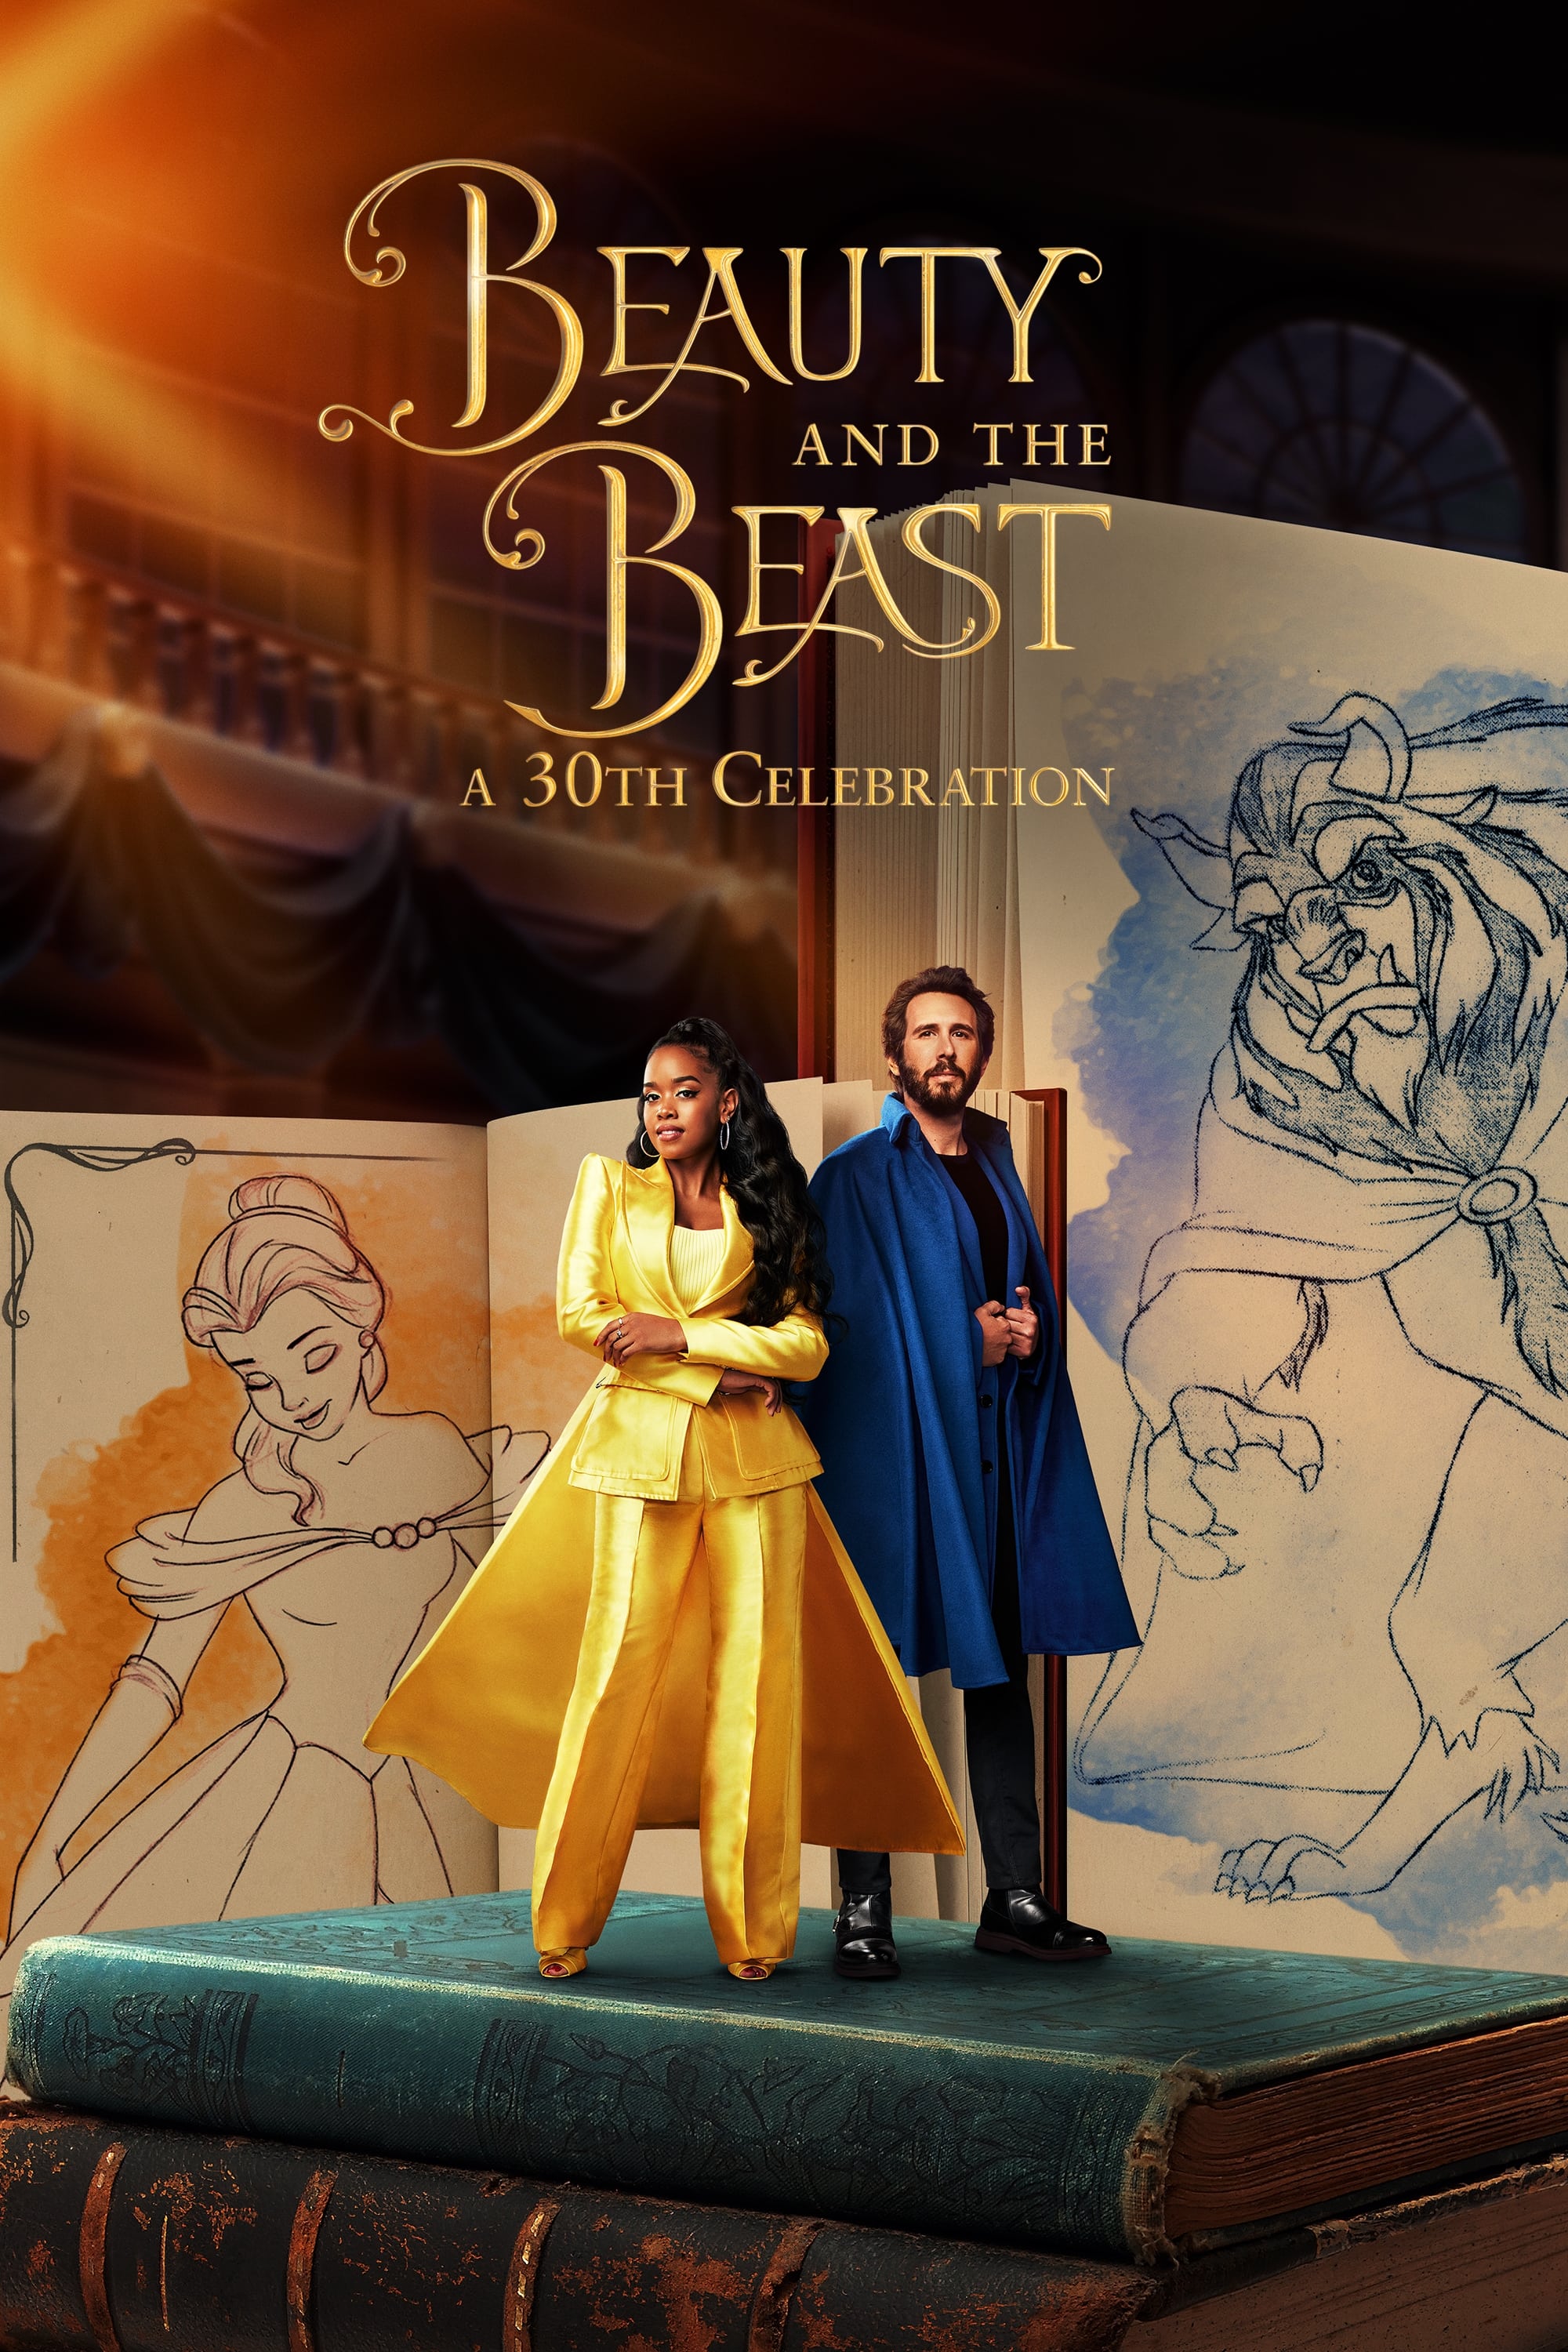 La Belle et la Bête DVD Disney Version Intégrale - Par